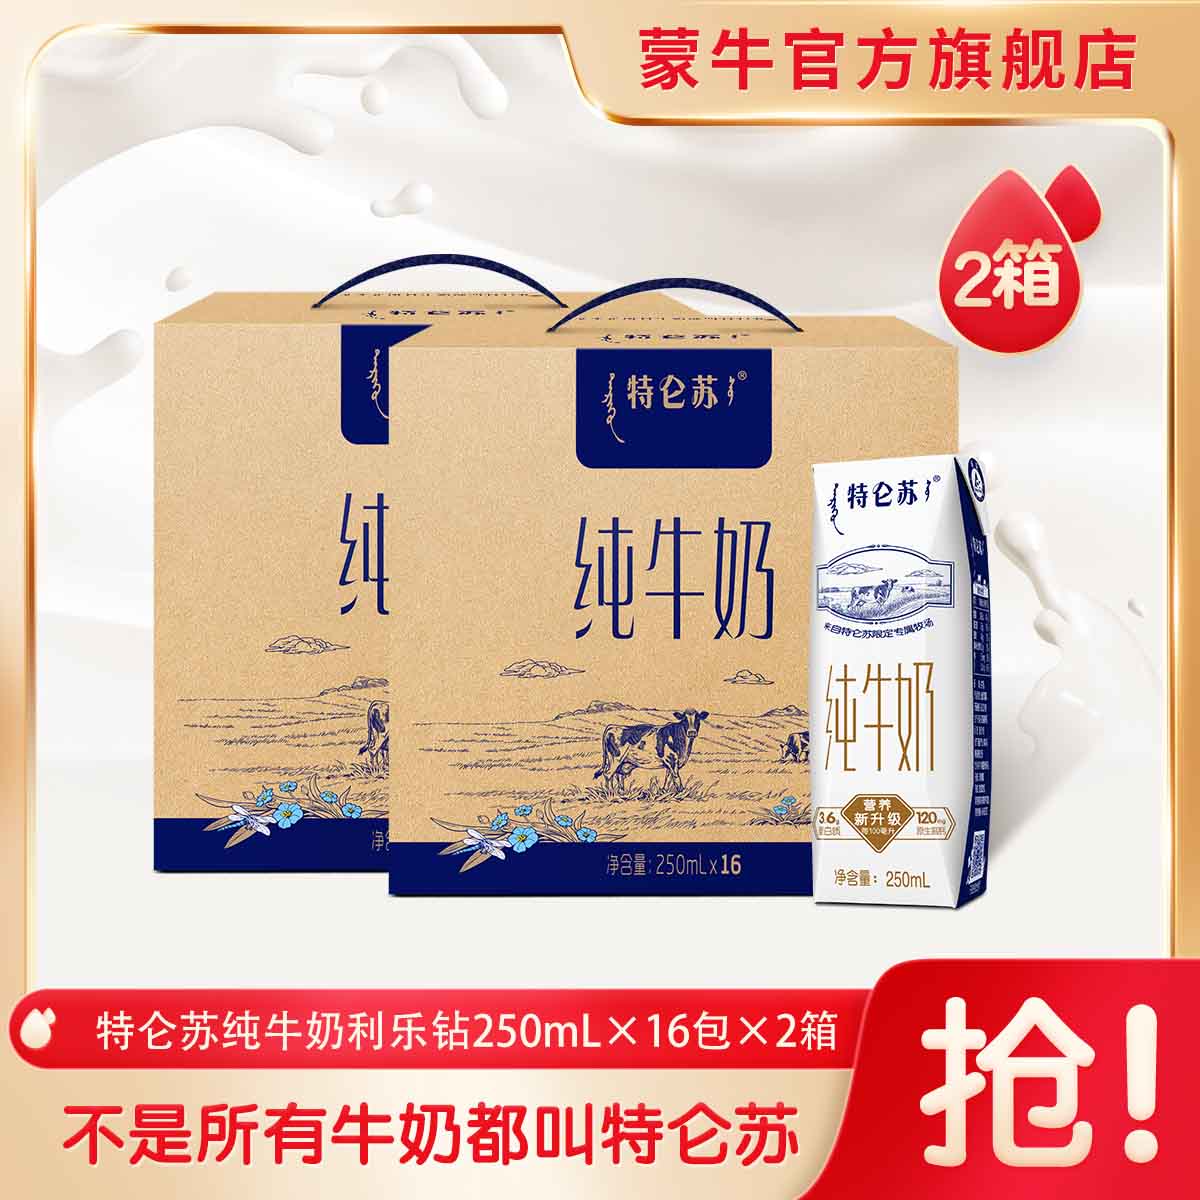 【店长推荐】特仑苏纯牛奶250ml*16包*2箱早餐营养品质礼盒